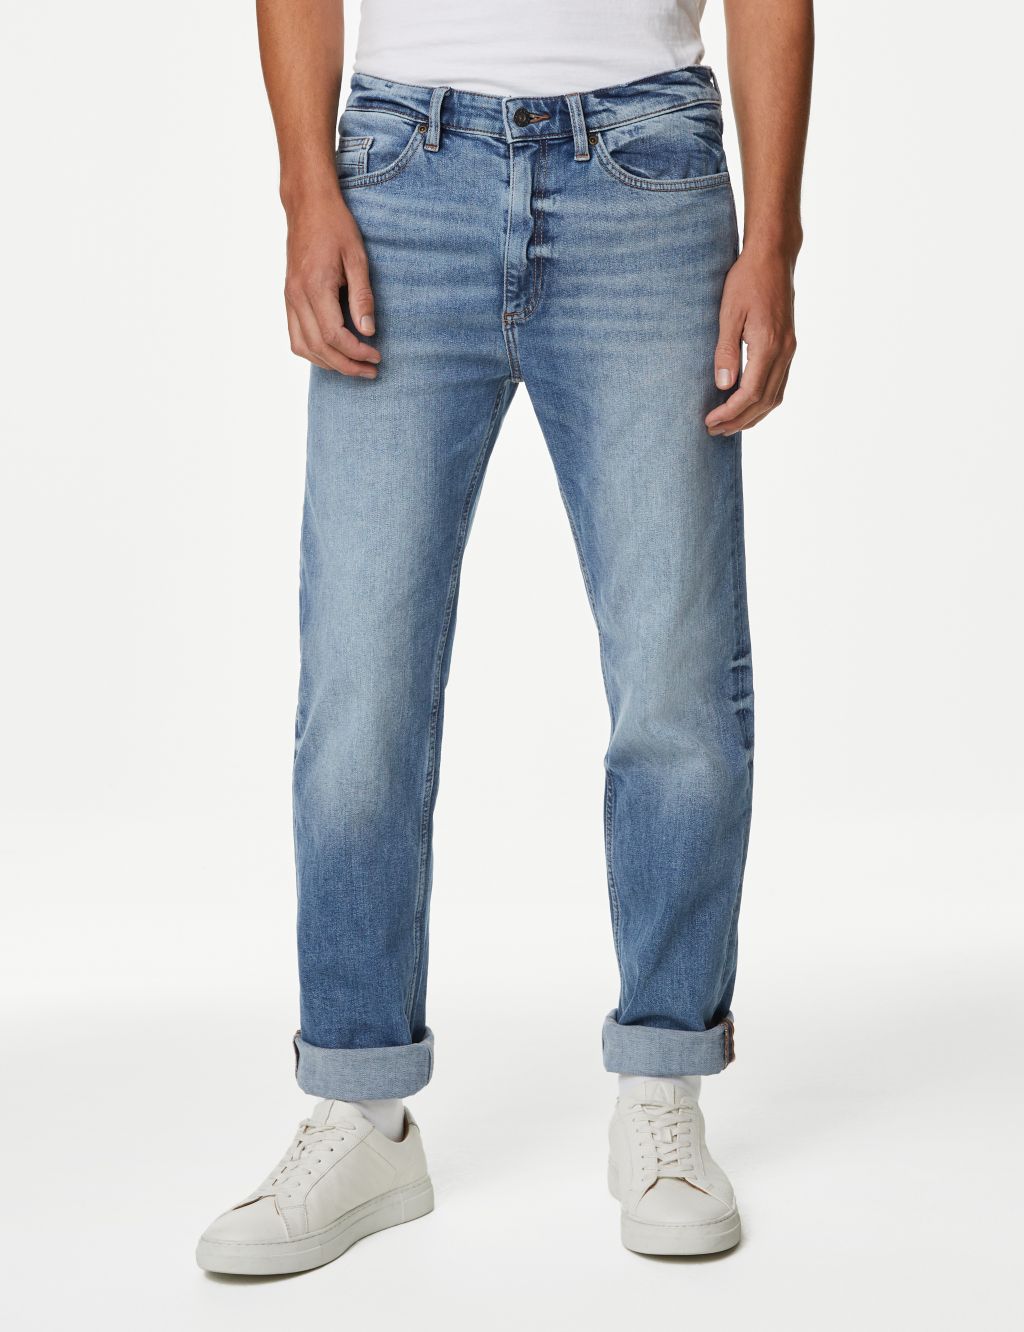 Men's Loose Fit Jeans